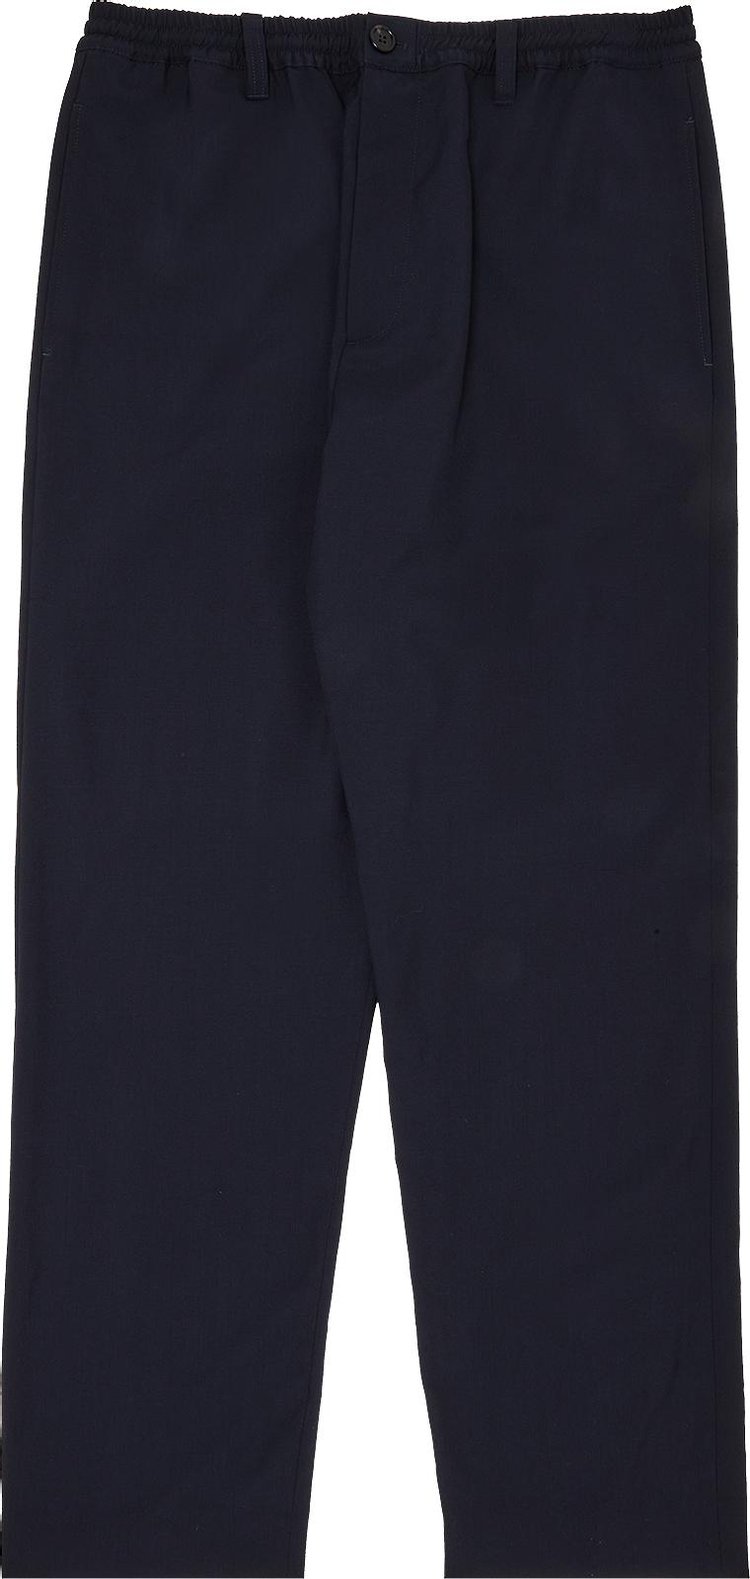 Buy Marni Trousers 'Blue/Black' - PUMU0156U0 BLUE | GOAT